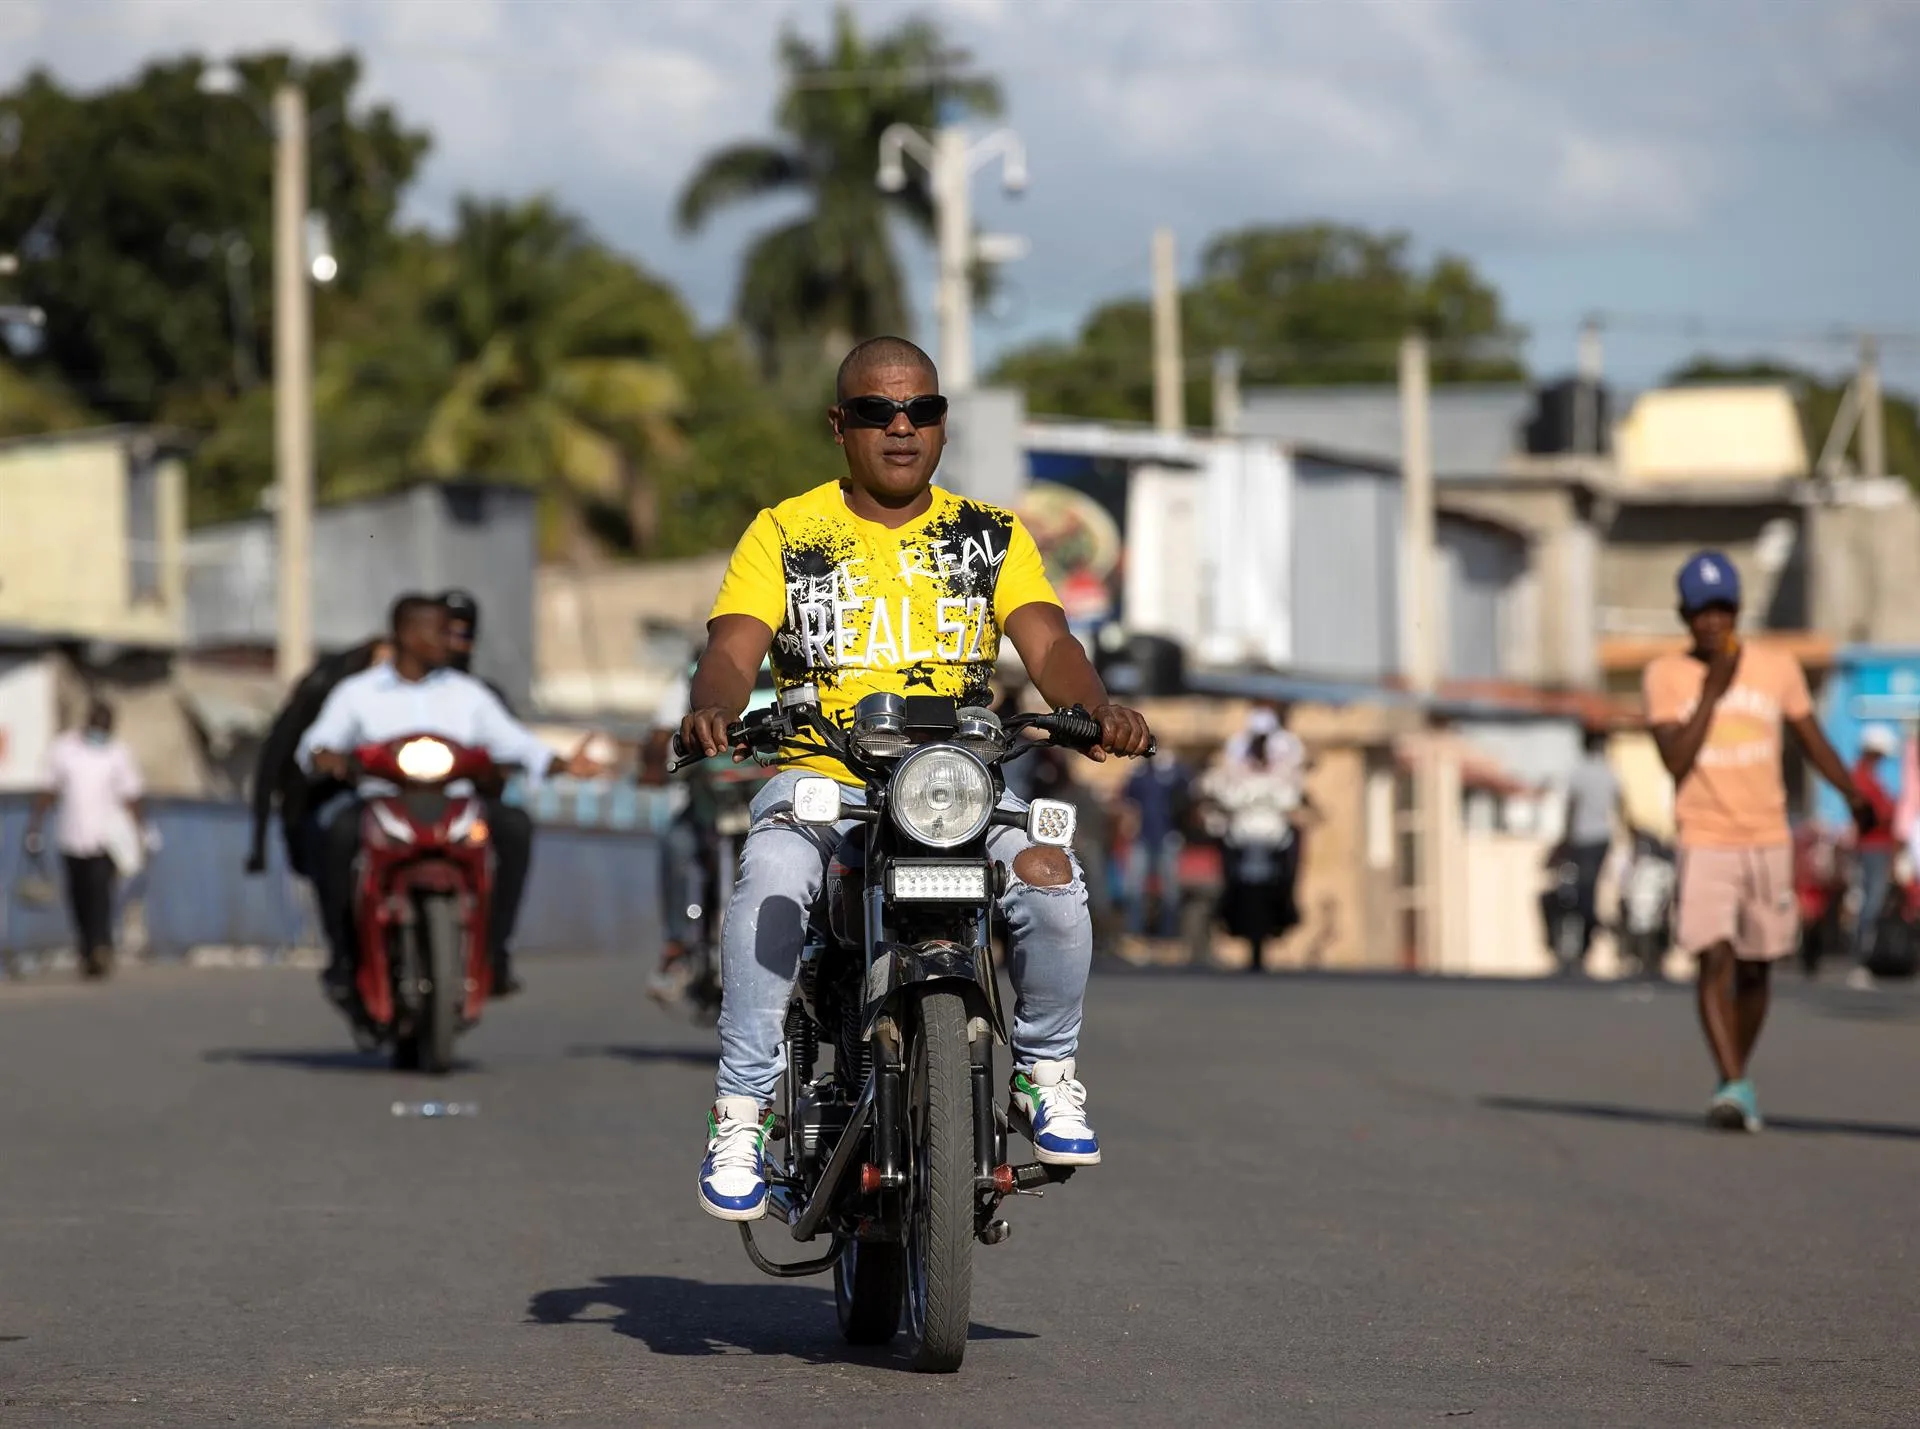 Hijos de haitianos denuncian trabas para recuperar la ciudadanía dominicana